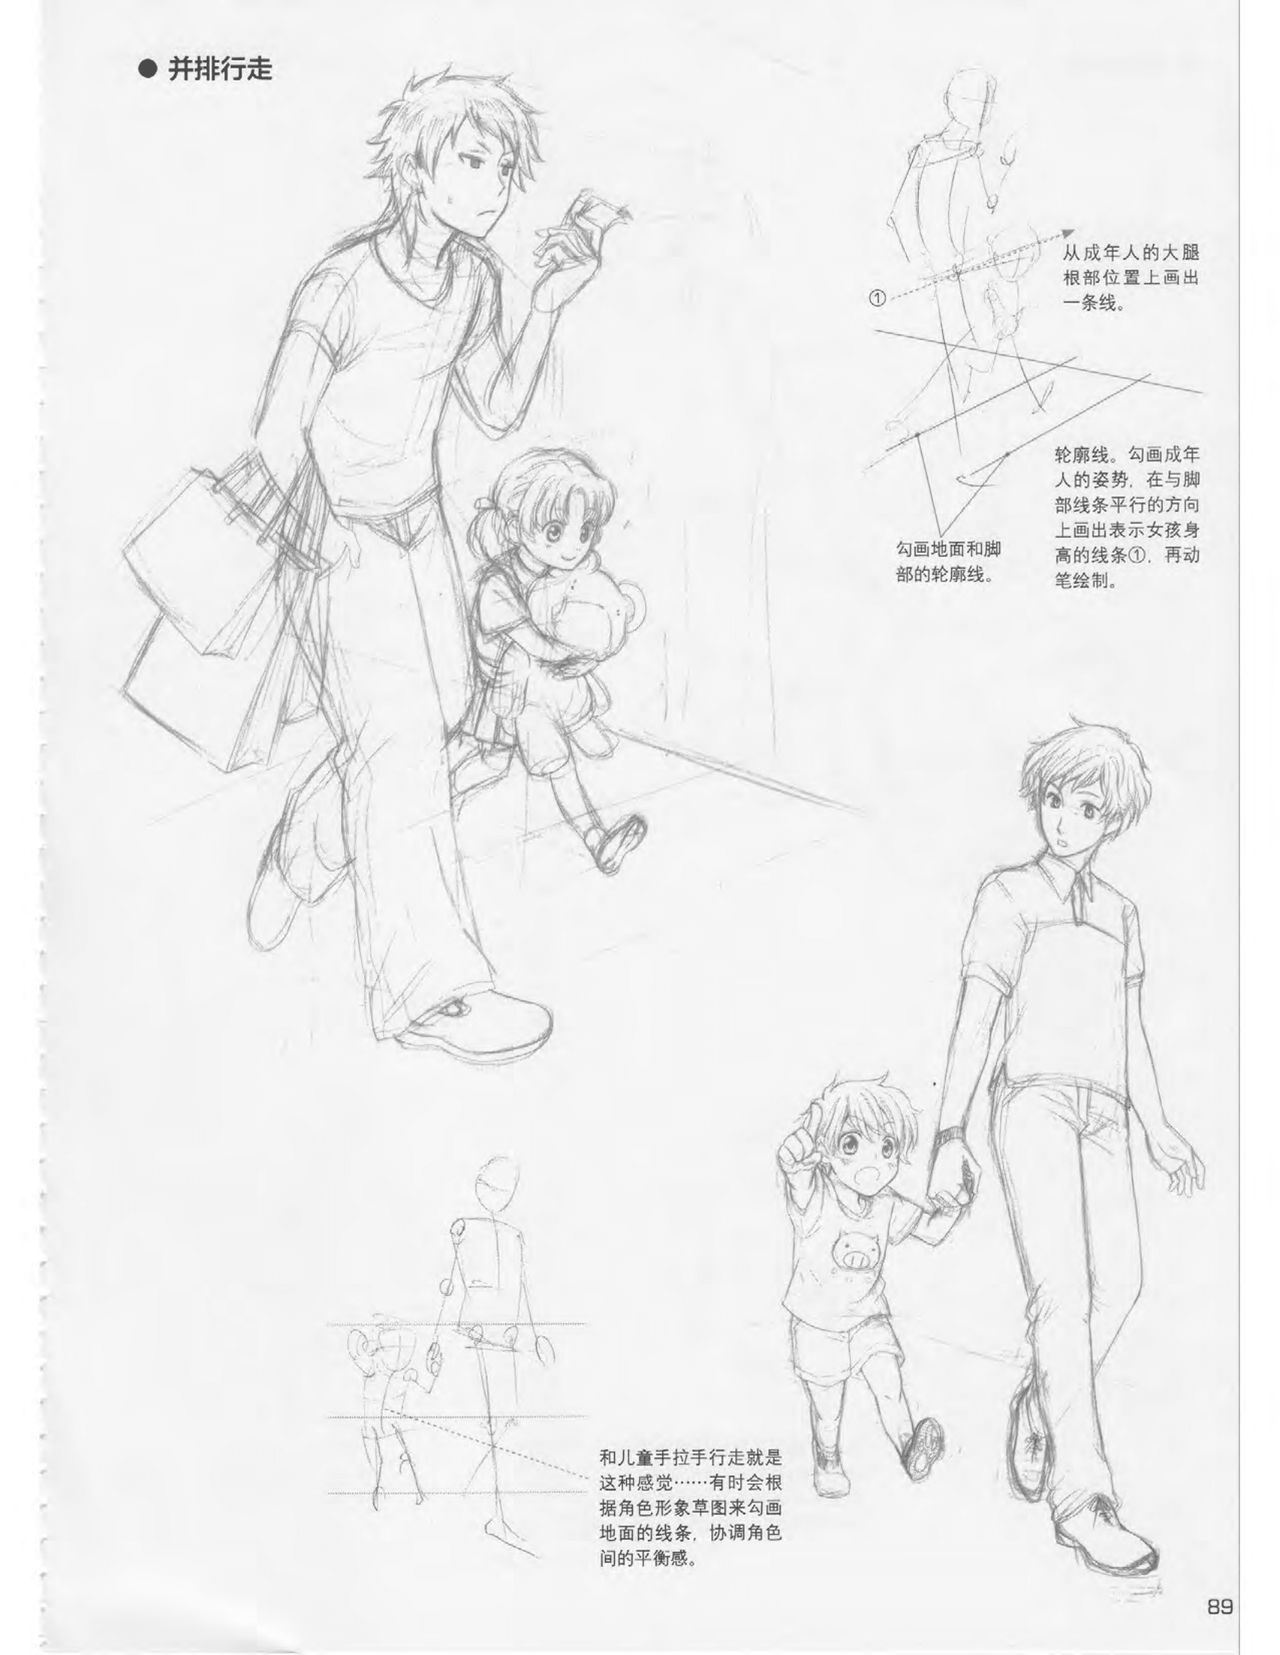 Japanese Manga Master Lecture 3: Lin Akira and Kakumaru Maru Talk About Glamorous Character Modeling 89